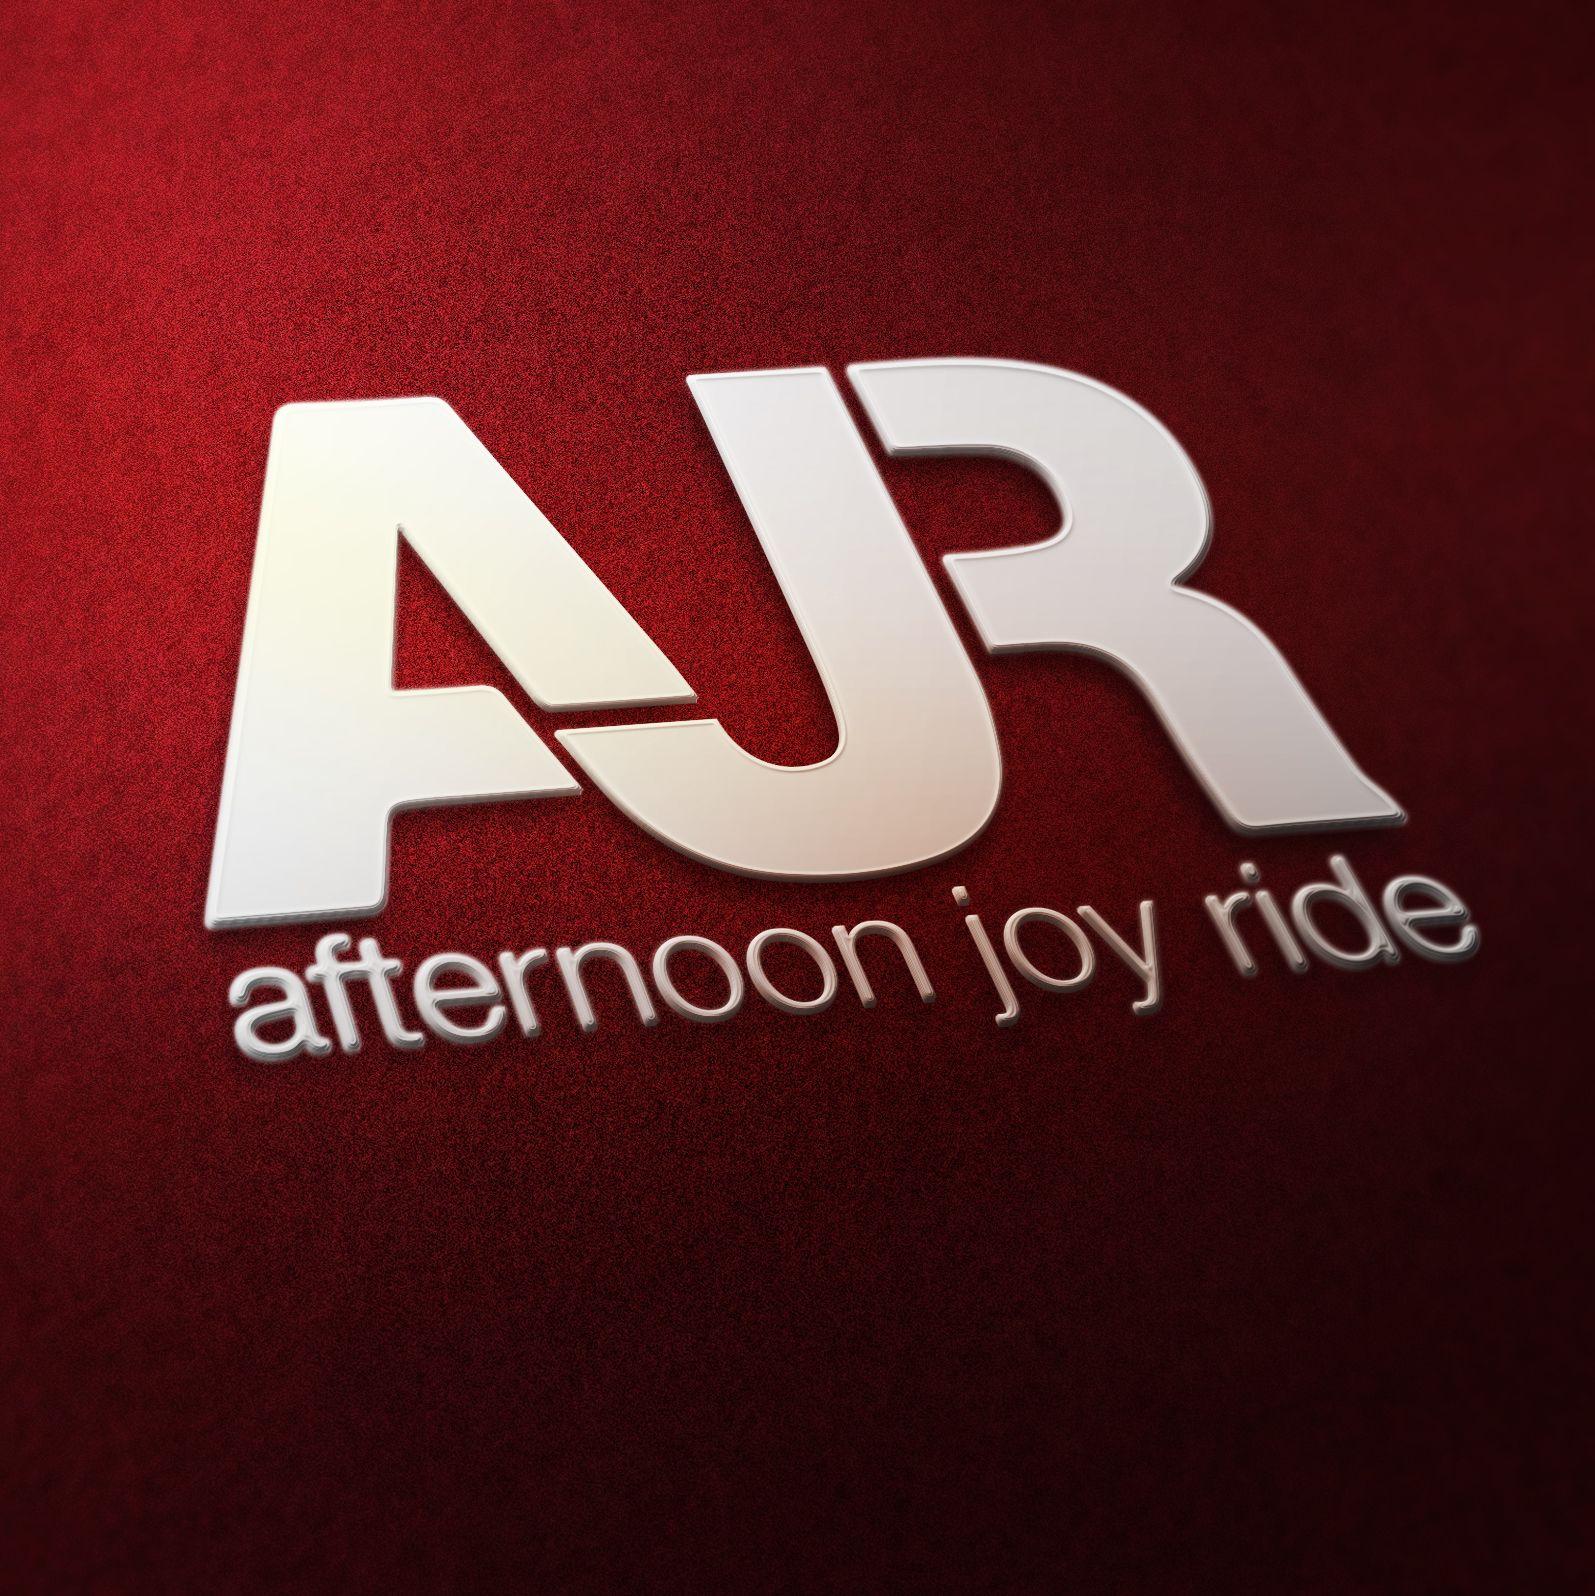 AJR Logo - sbcolawdesign